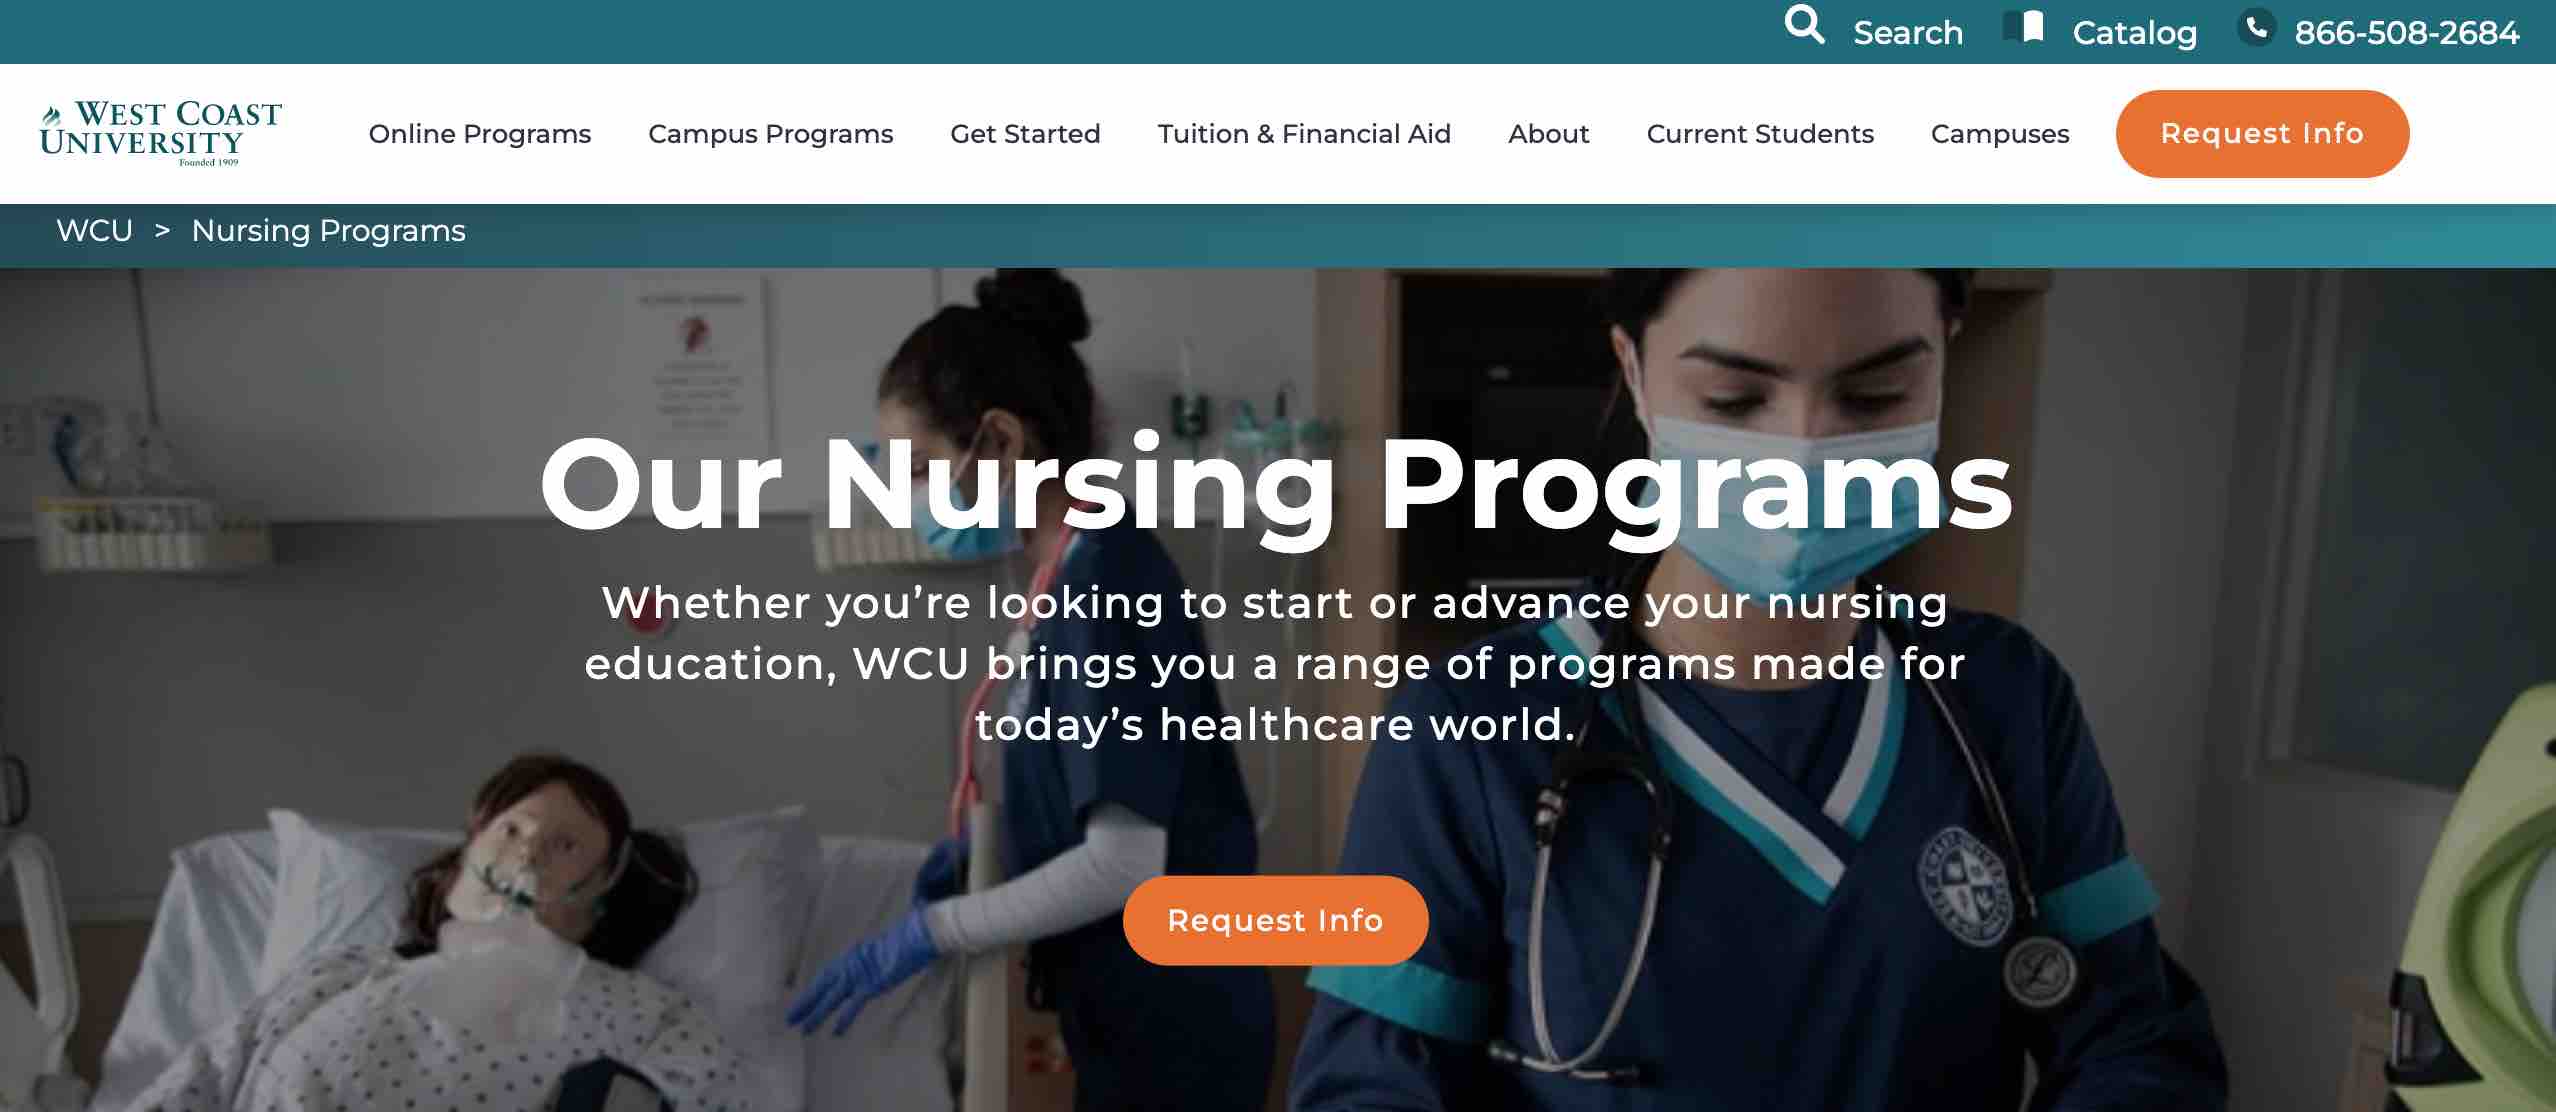 student recruitment for nursing programs